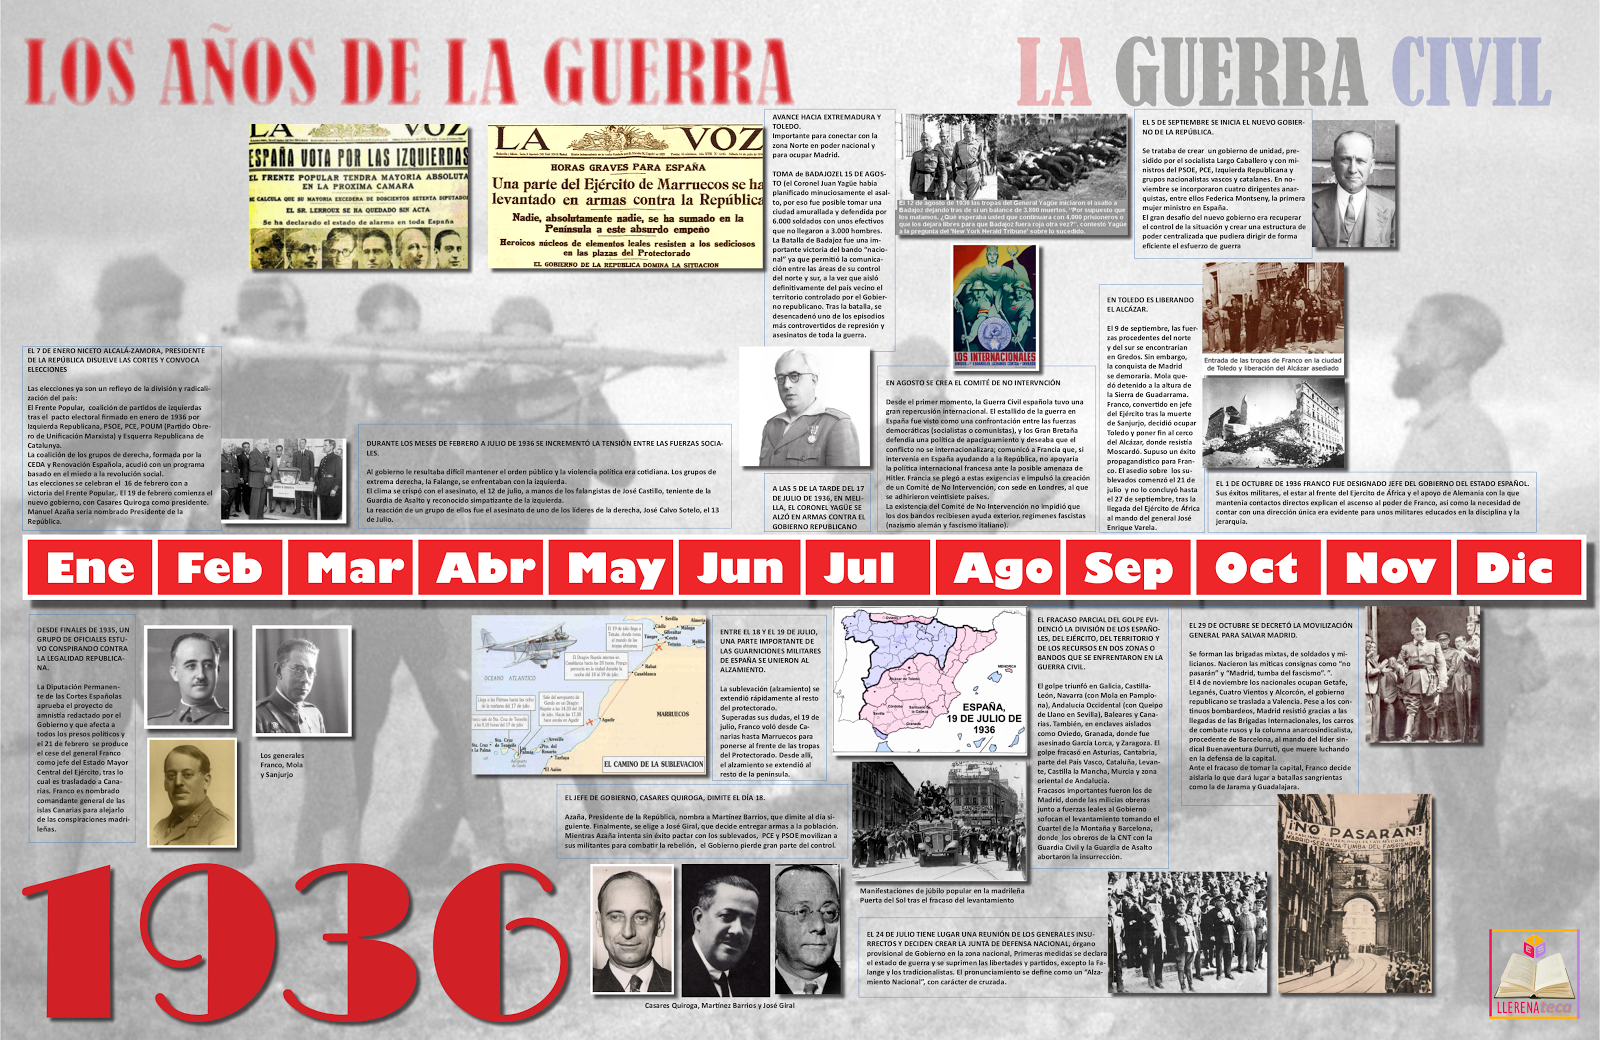 La guerra civil española: Proyecto interdisciplinar